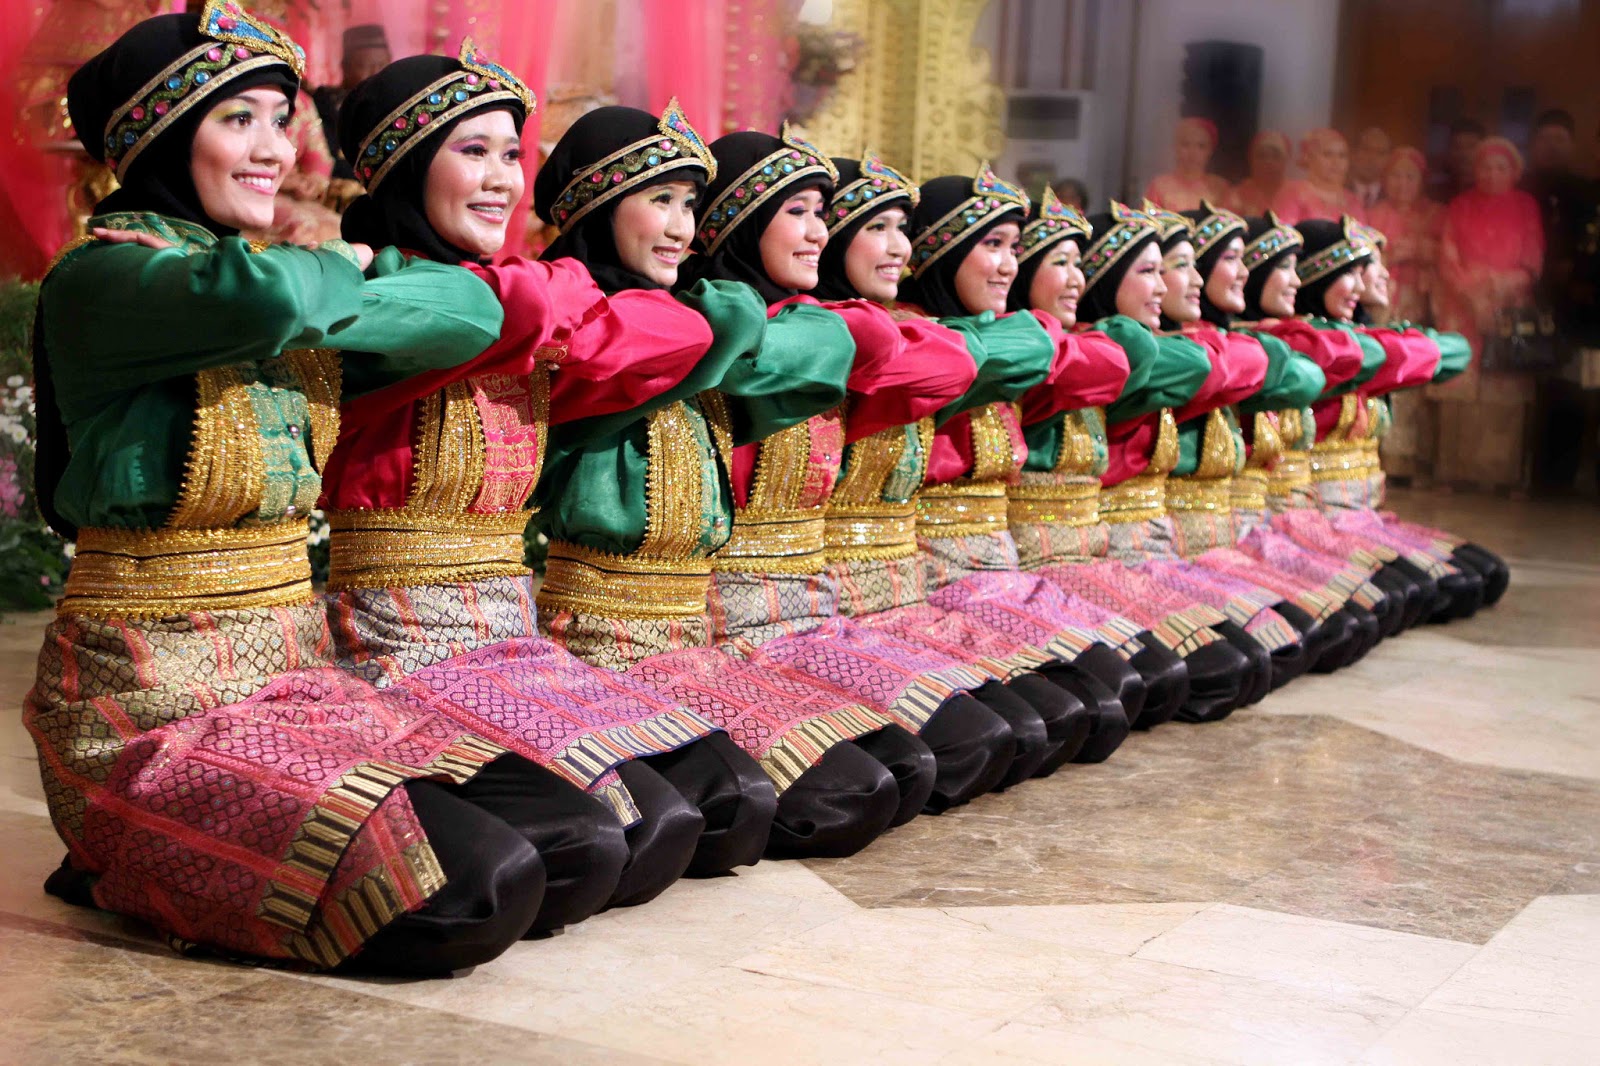 Mengenal Dan Memahami Adat Aceh  Serta Budaya Aceh  